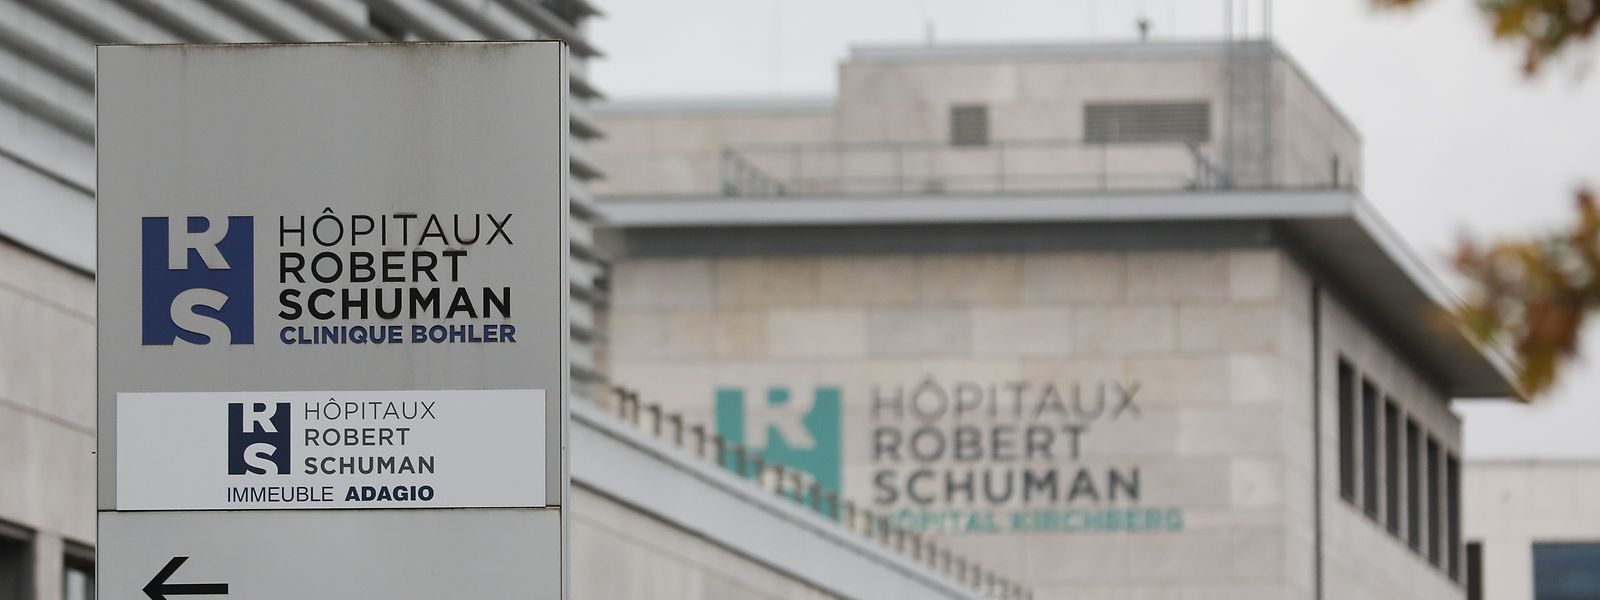 Hôpital Robert Schuman, clinique Bohler, Kirchberg, Foto: Chris Karaba/Luxemburger Wort